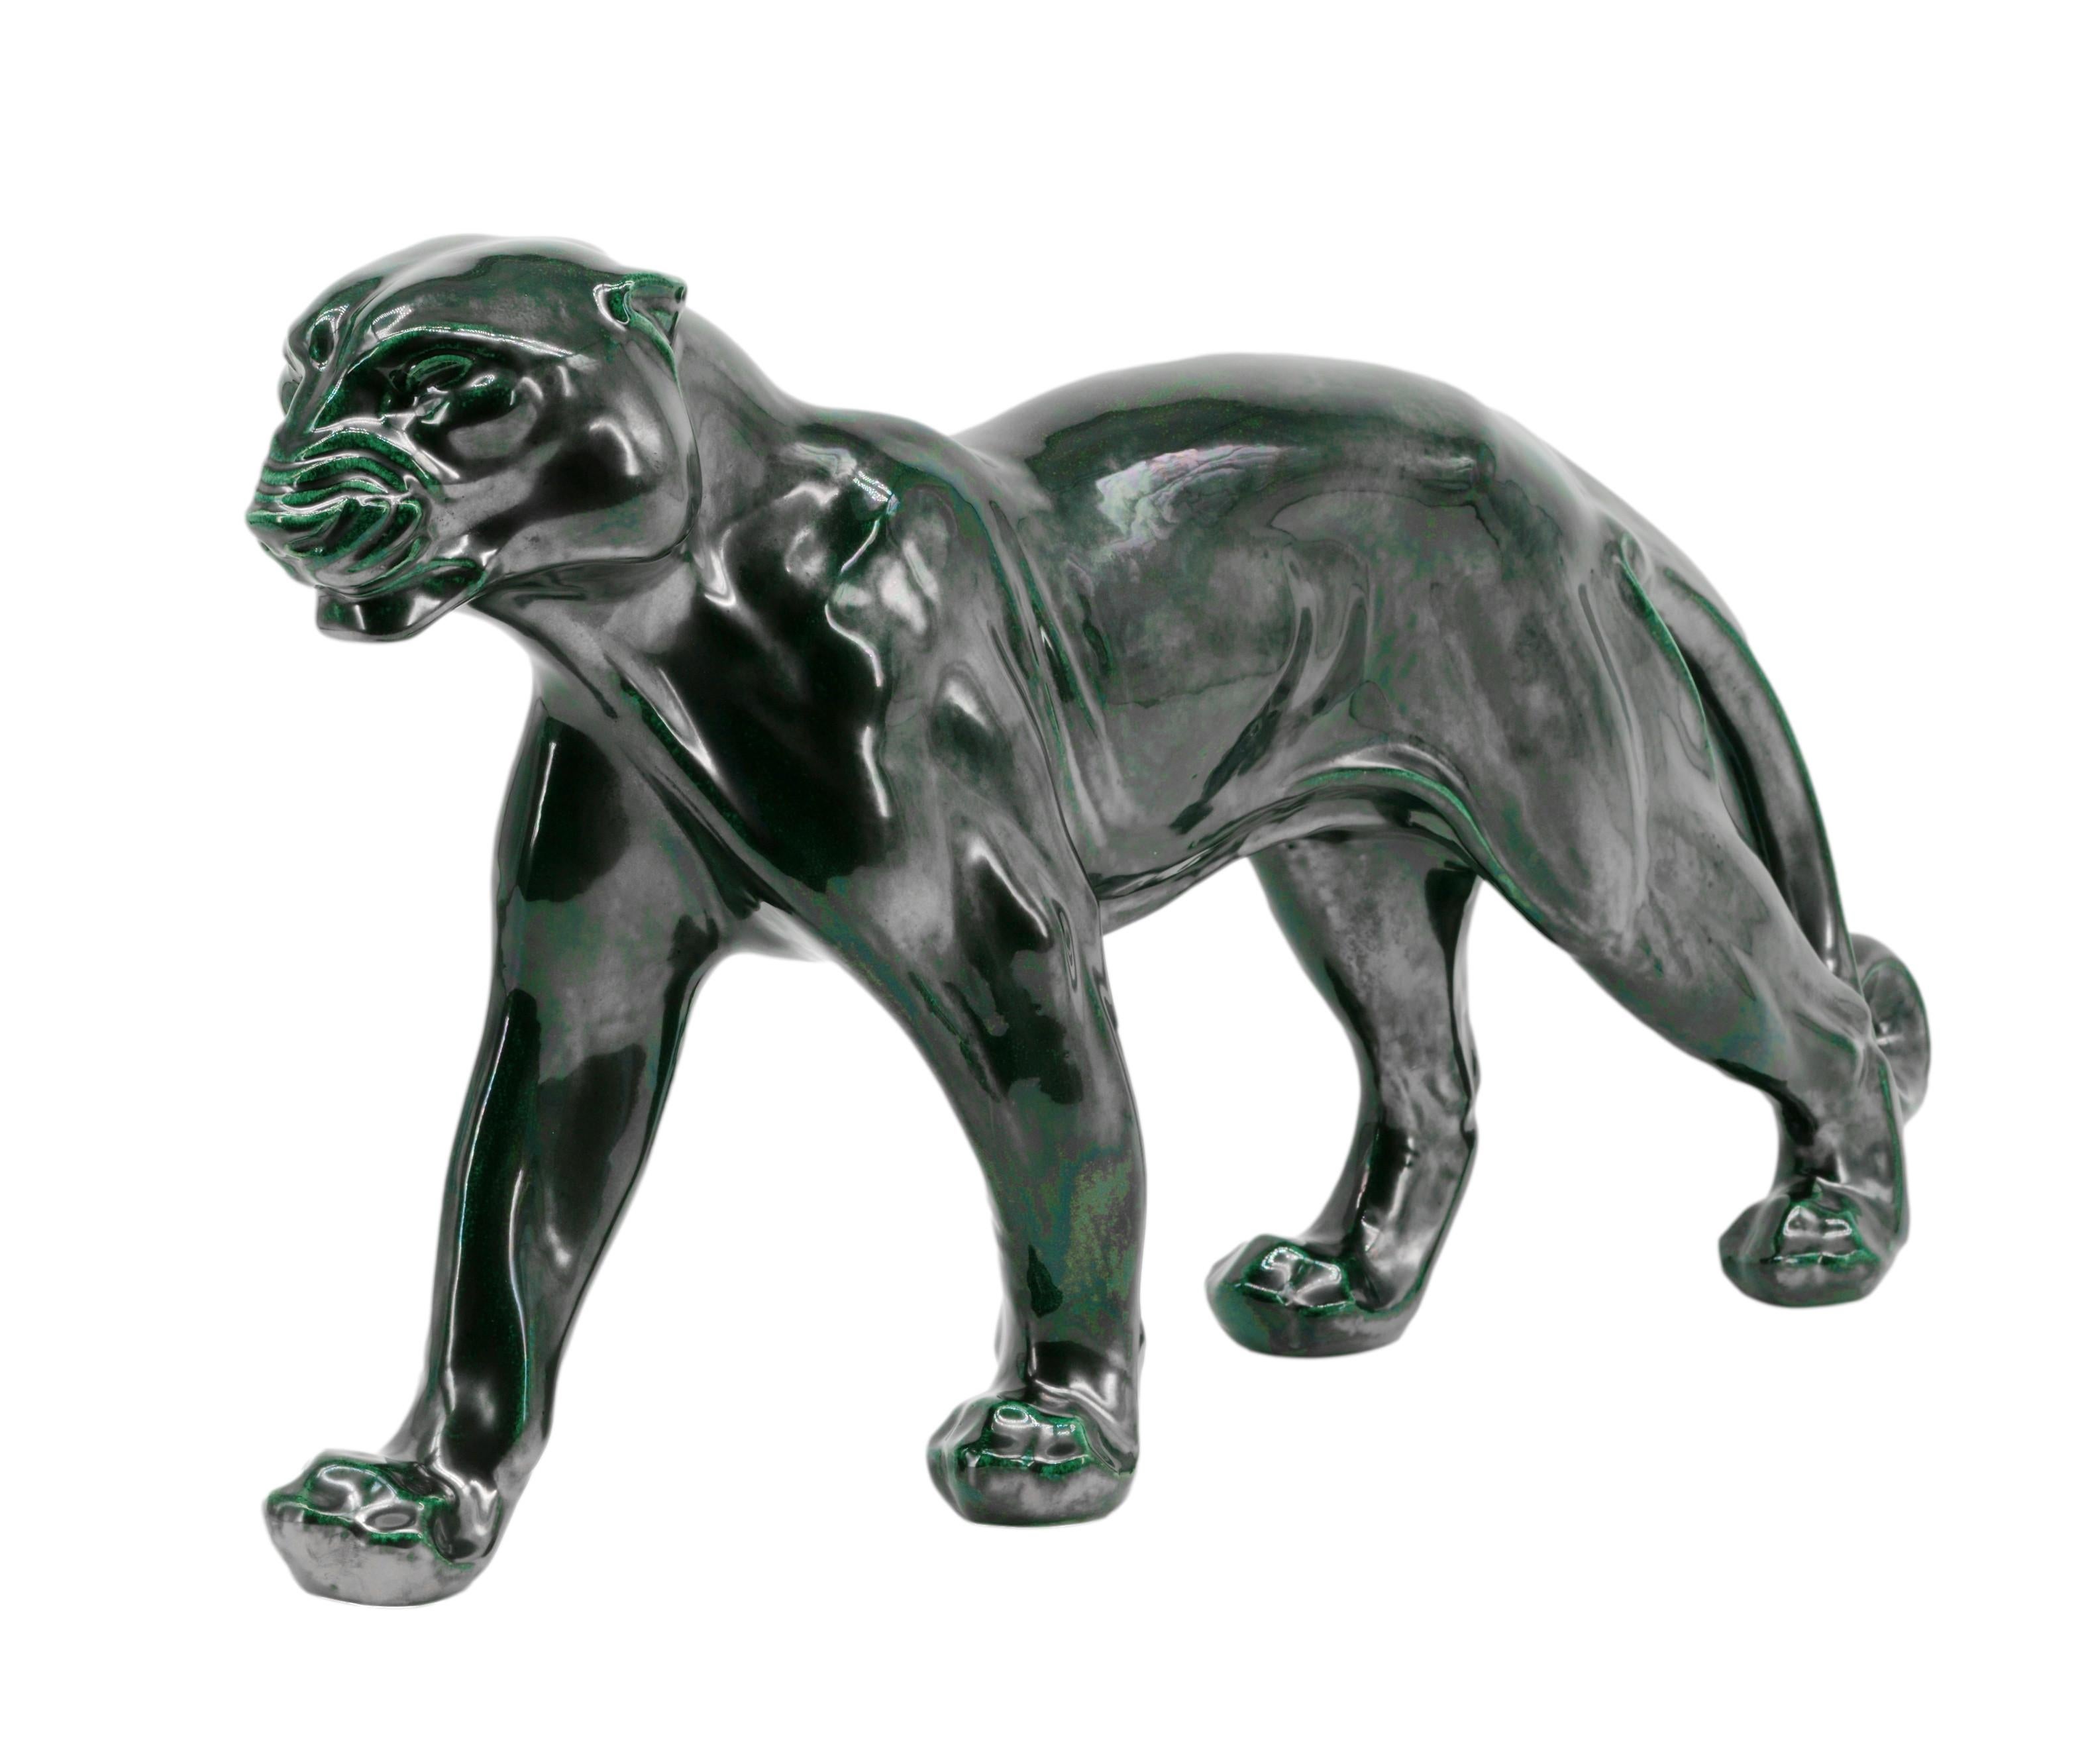 Santiago Rodriguez Bonome French Art Deco Ceramic Panther Sculpture, 1940s For Sale 4